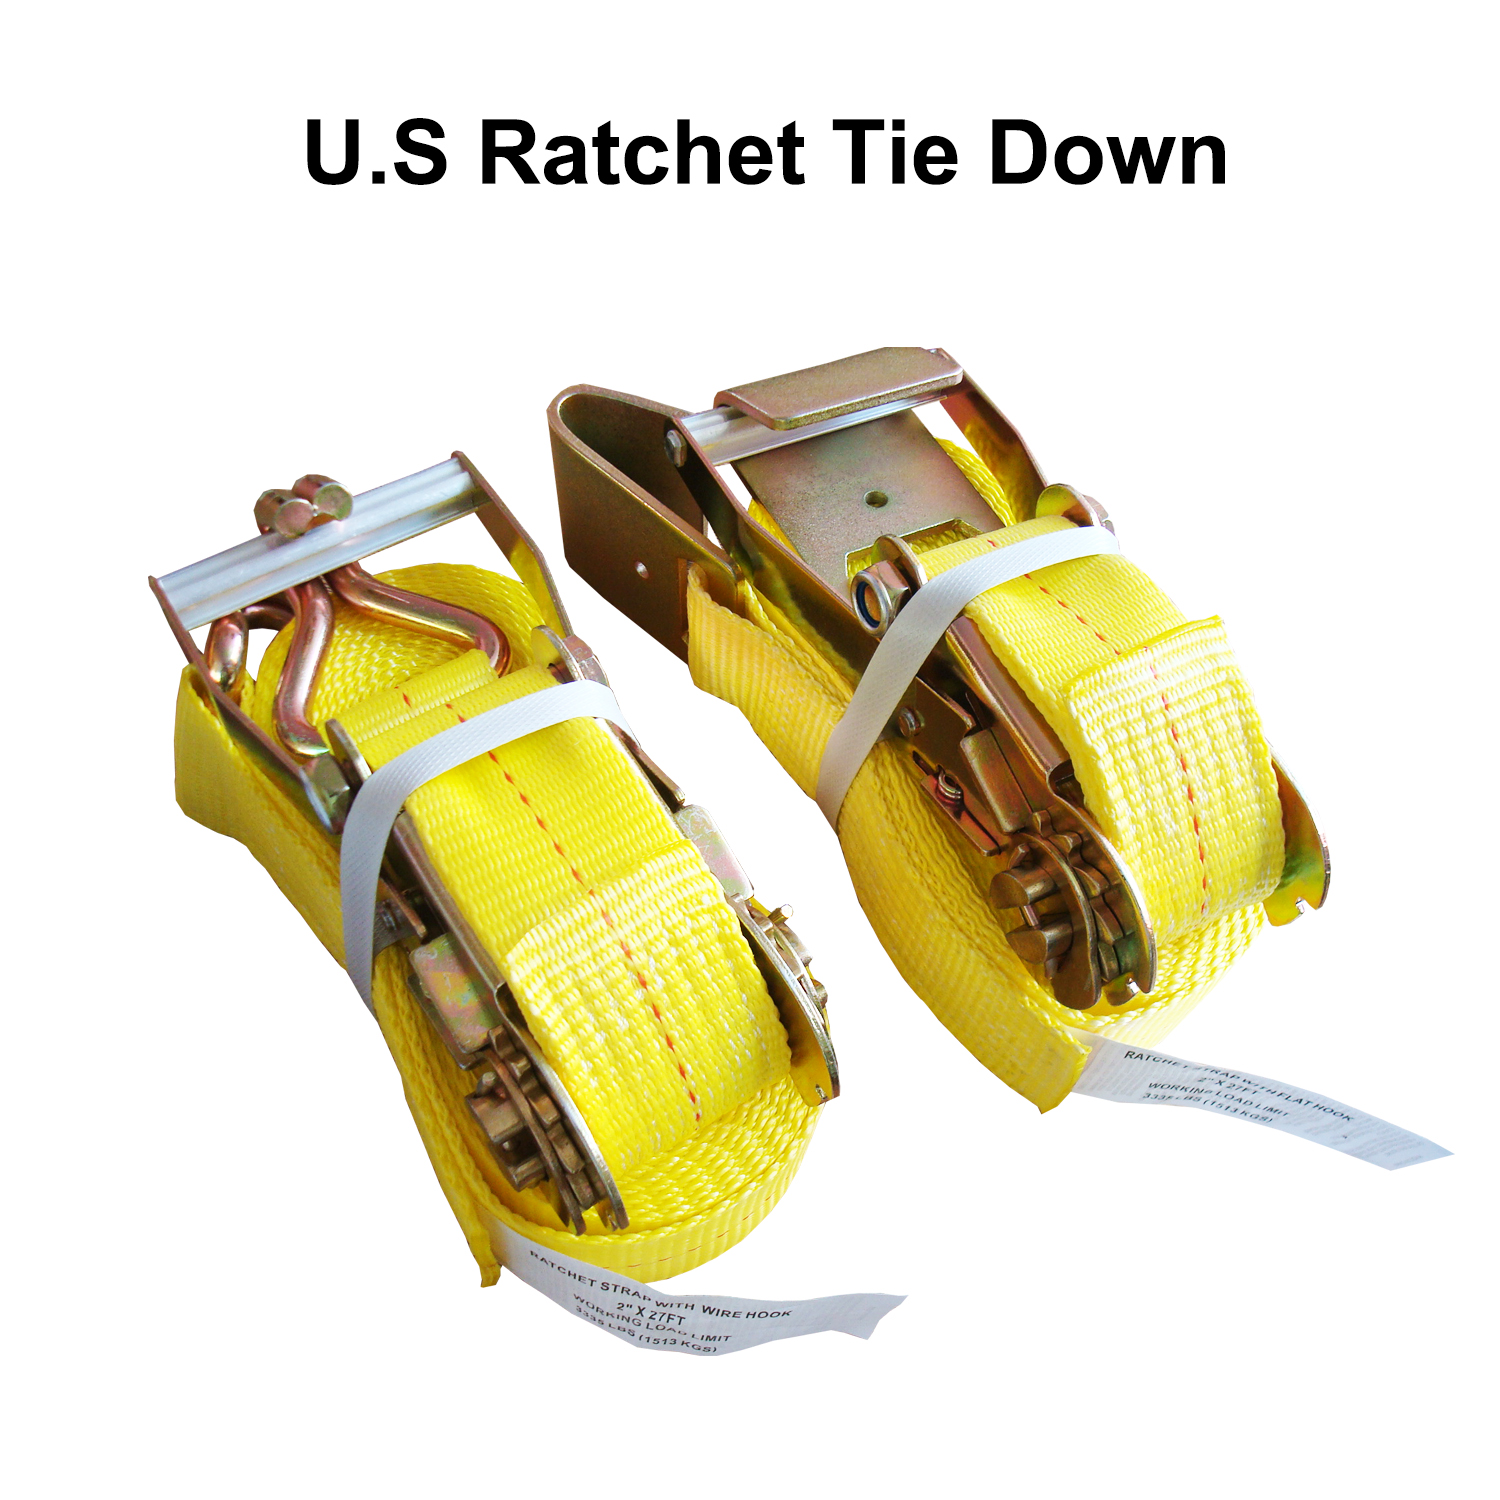 OEM Ratchet Lashing Ergo Cargo lashing Straps Restraints Container ratchet straps Truck Ratchet tie-down EN-12195